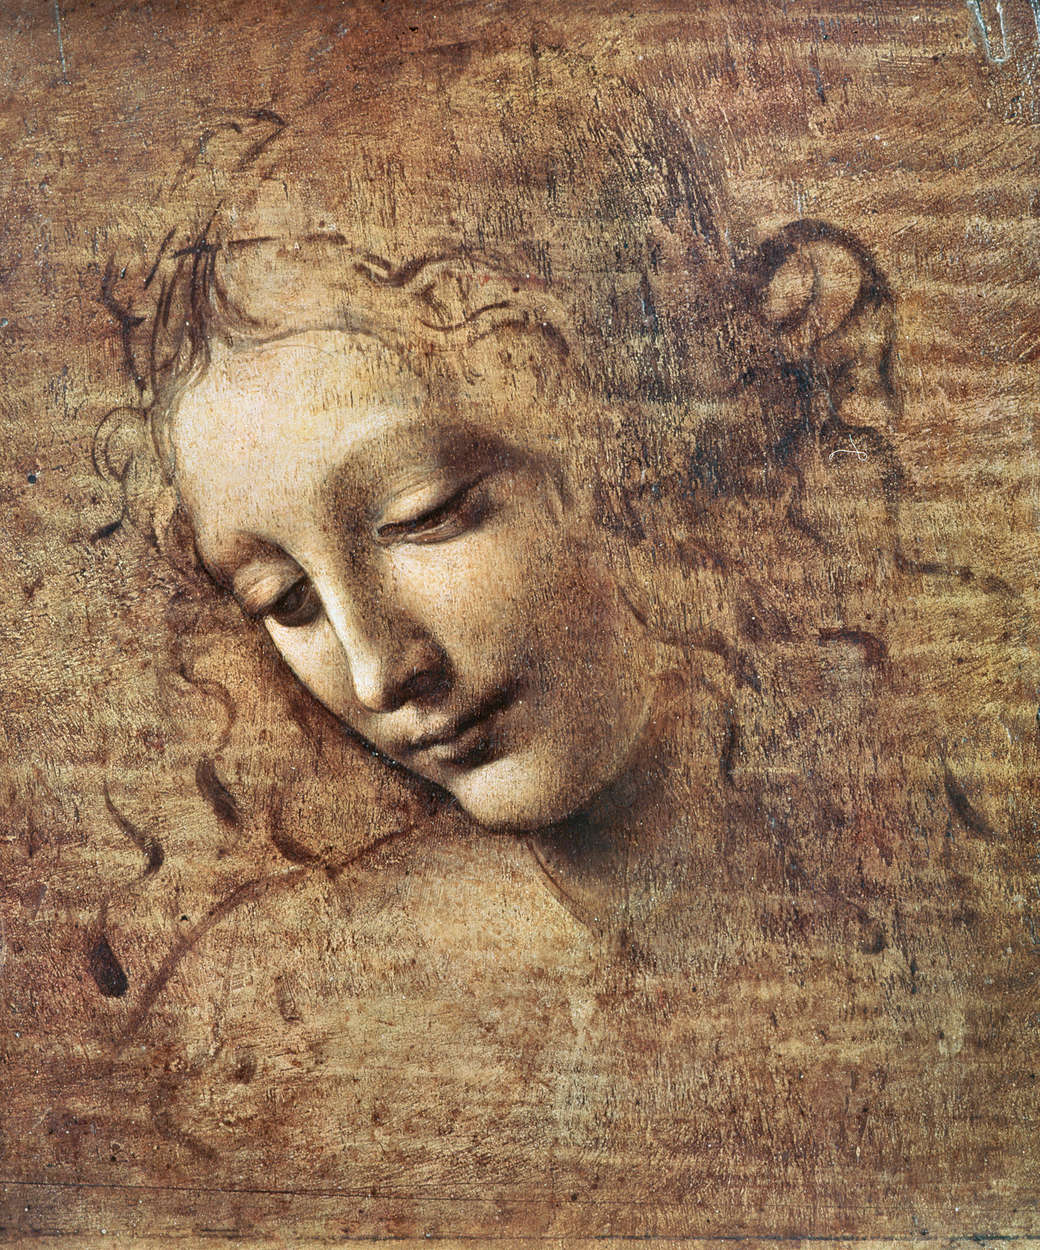             Mural "Cabeza de mujer joven con el pelo revuelto" de Leonardo da Vinci
        